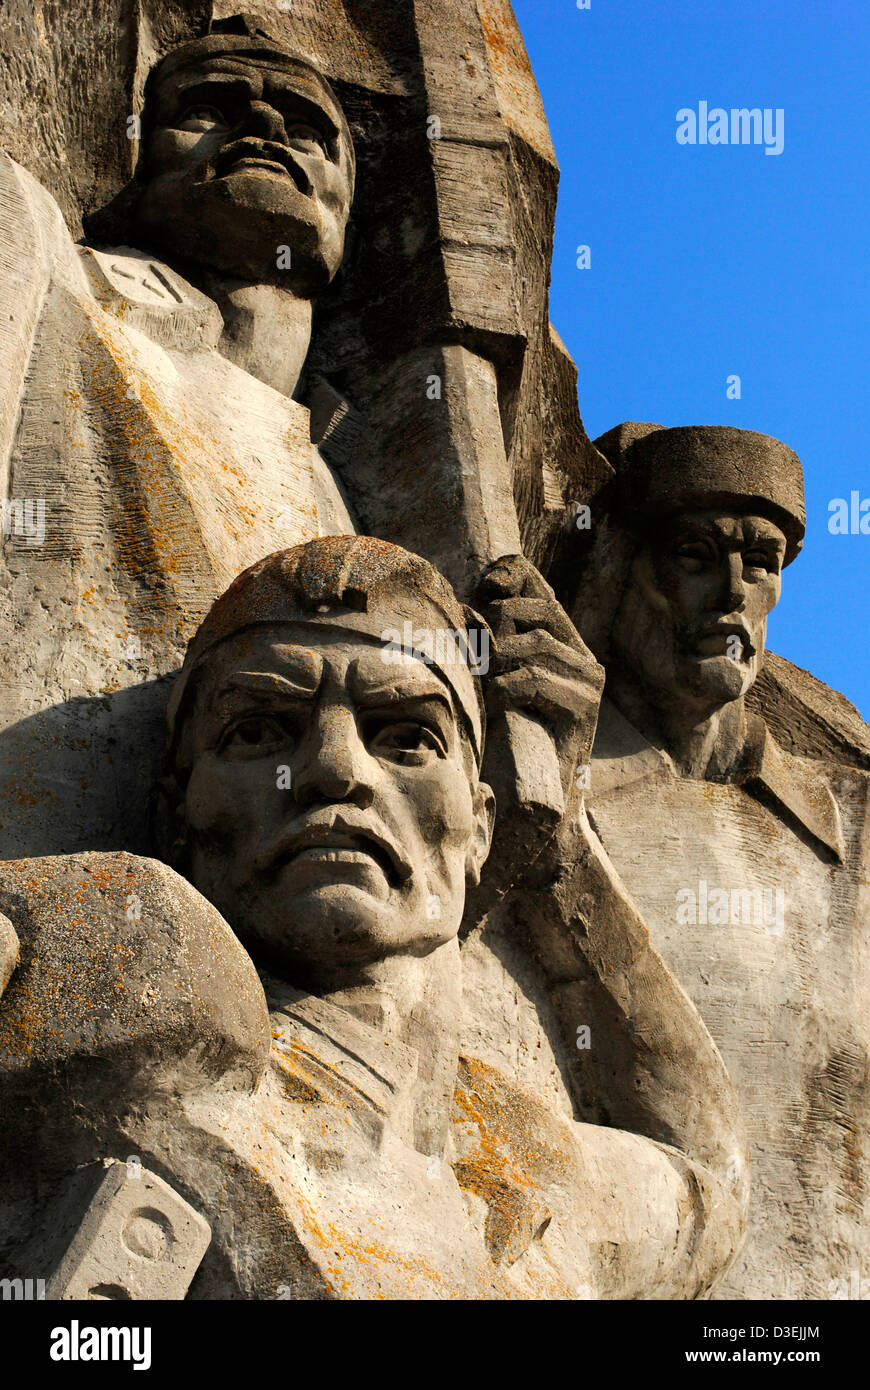 L'Ucraina. La Crimea. Memoriale per la difesa della cava Adzhimushkay, 1982, contro l'occupazione nazista nel 1942. Dettaglio. Foto Stock